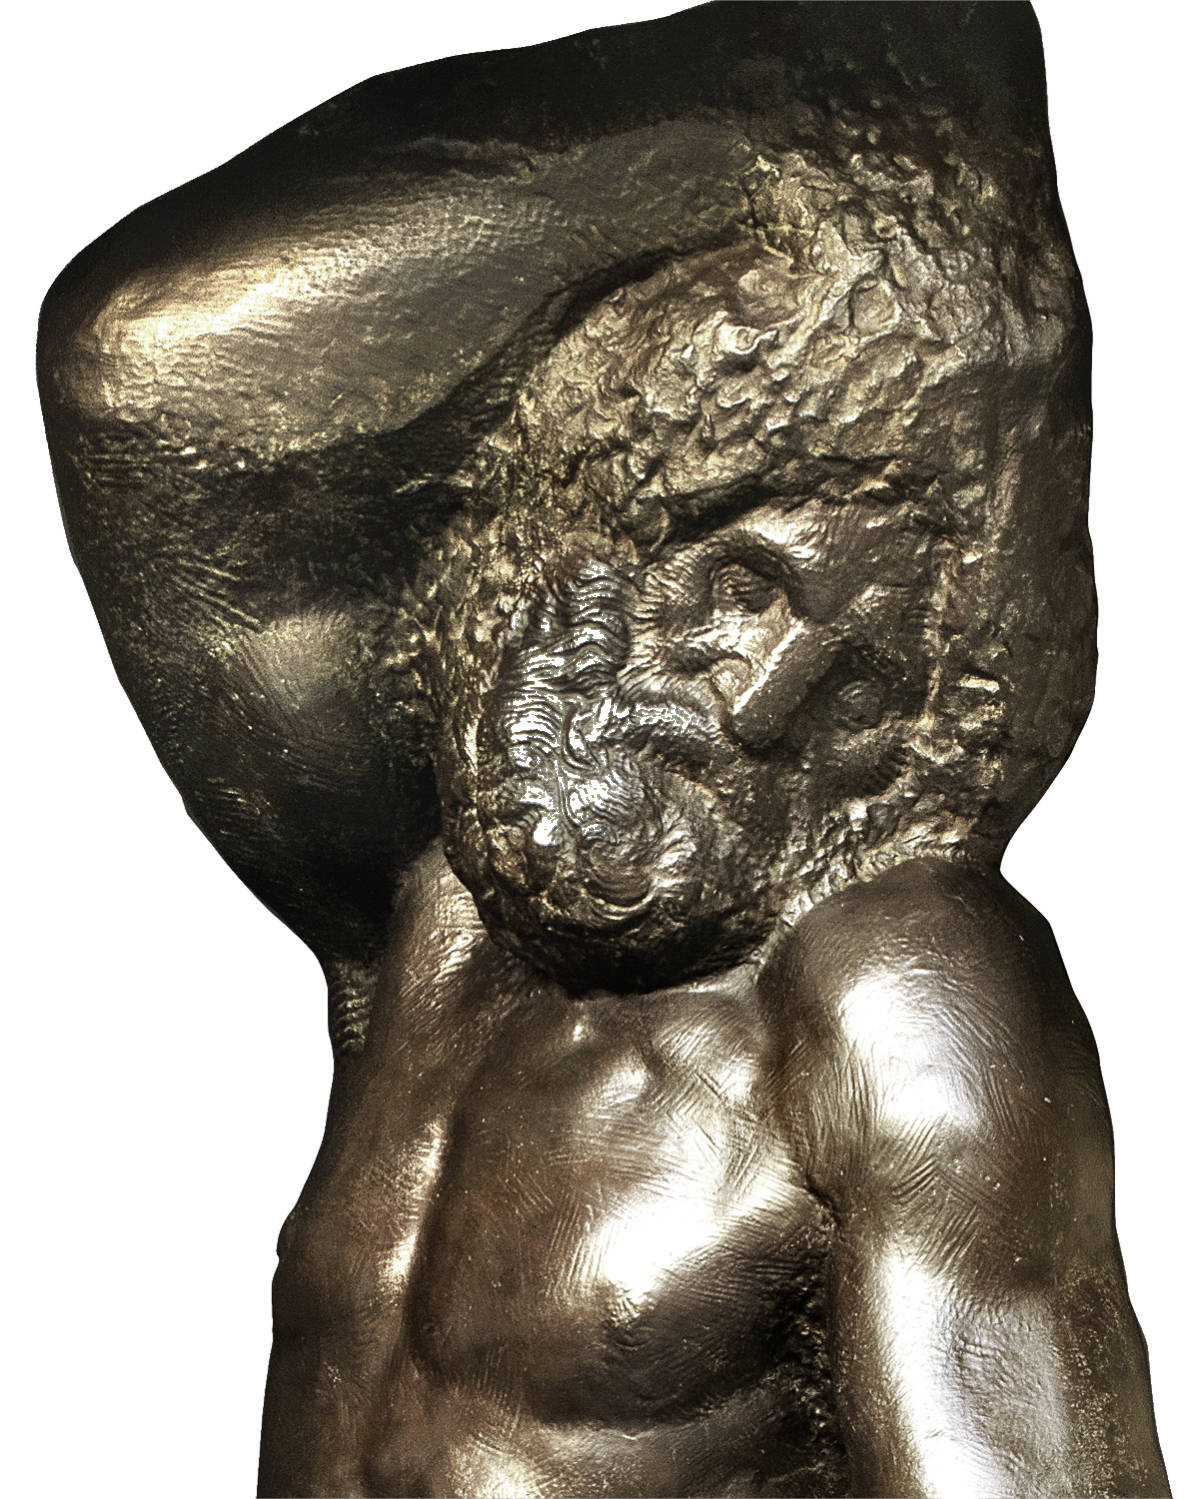 fonderia artistica ferdinando marinelli galleria bazzanti firenze replica in bronzo della scultura schiavo barbuto di michelangelo